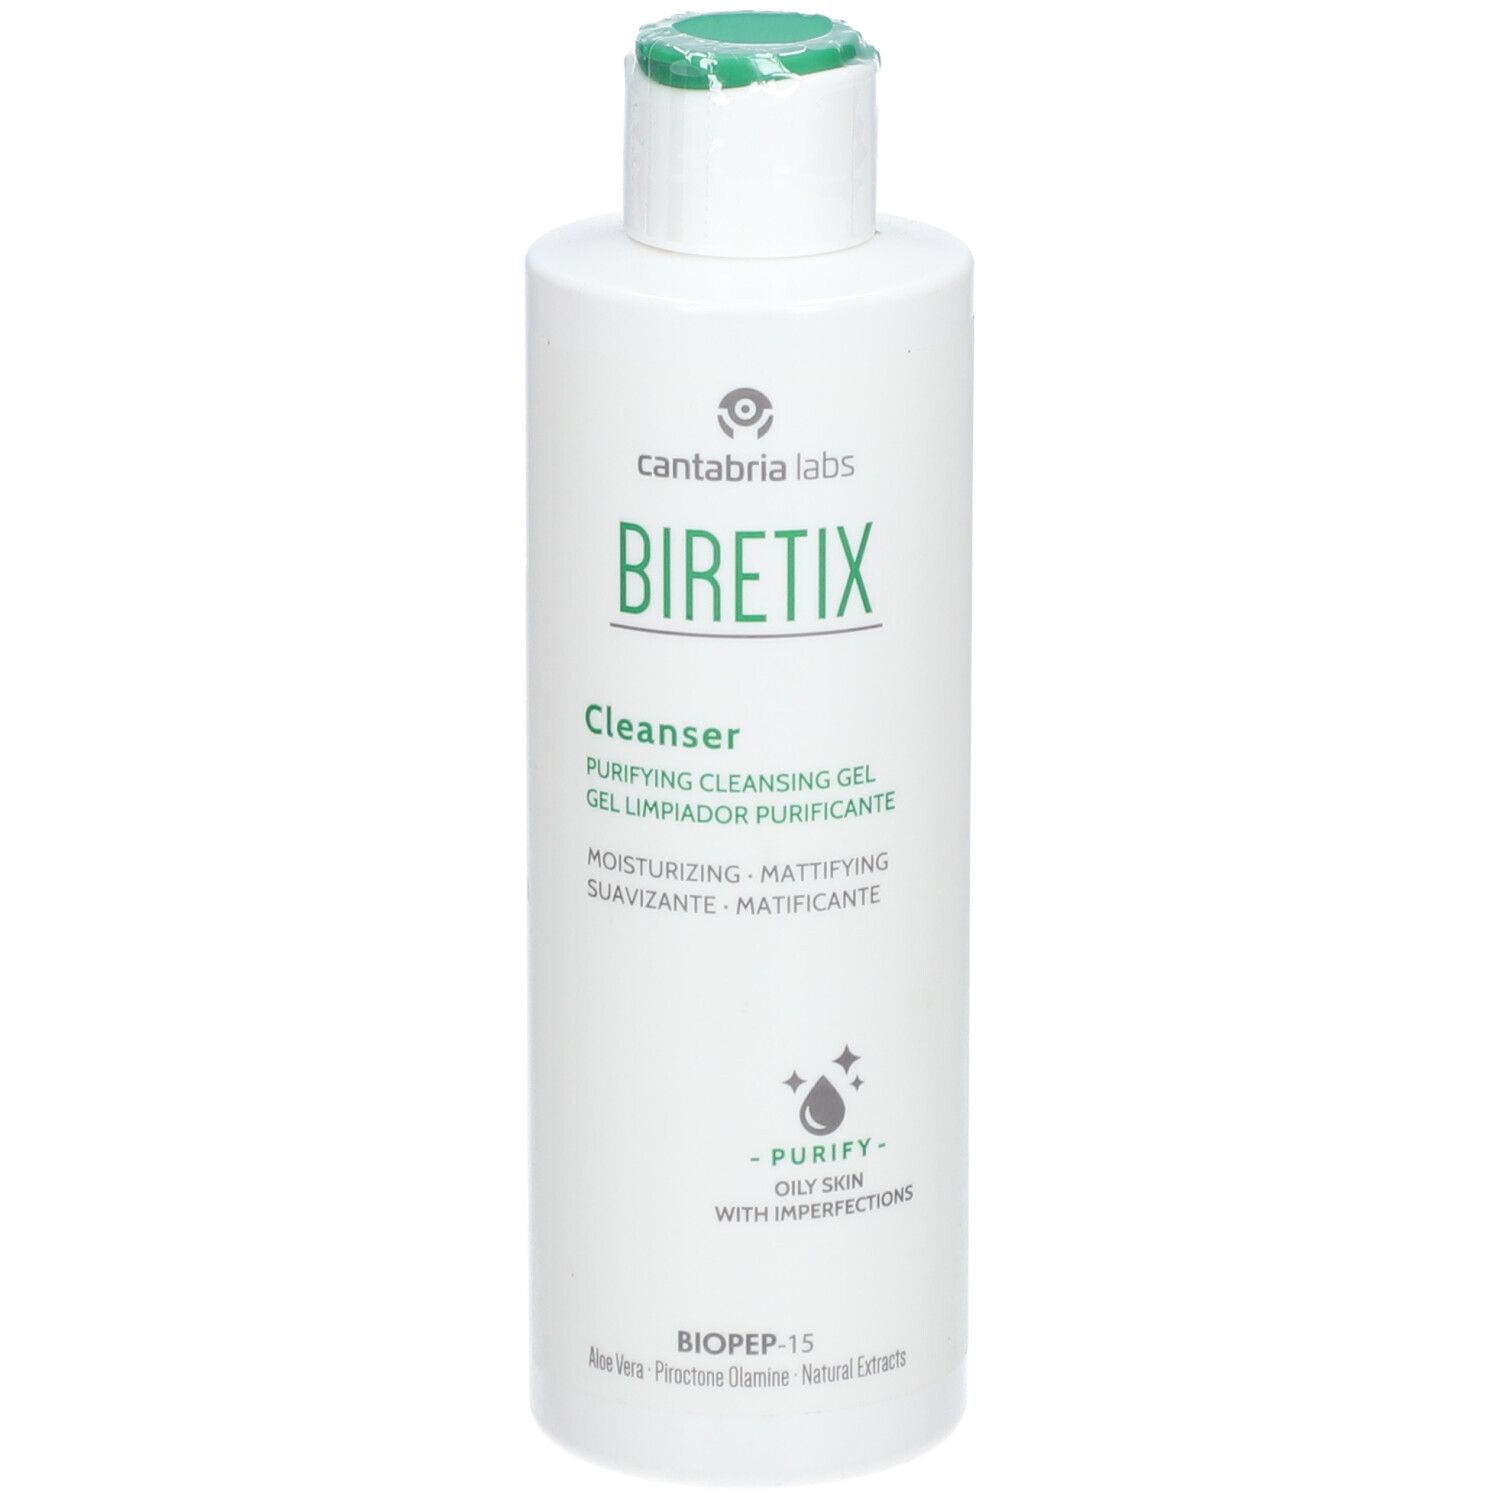 Biretix Cleanser